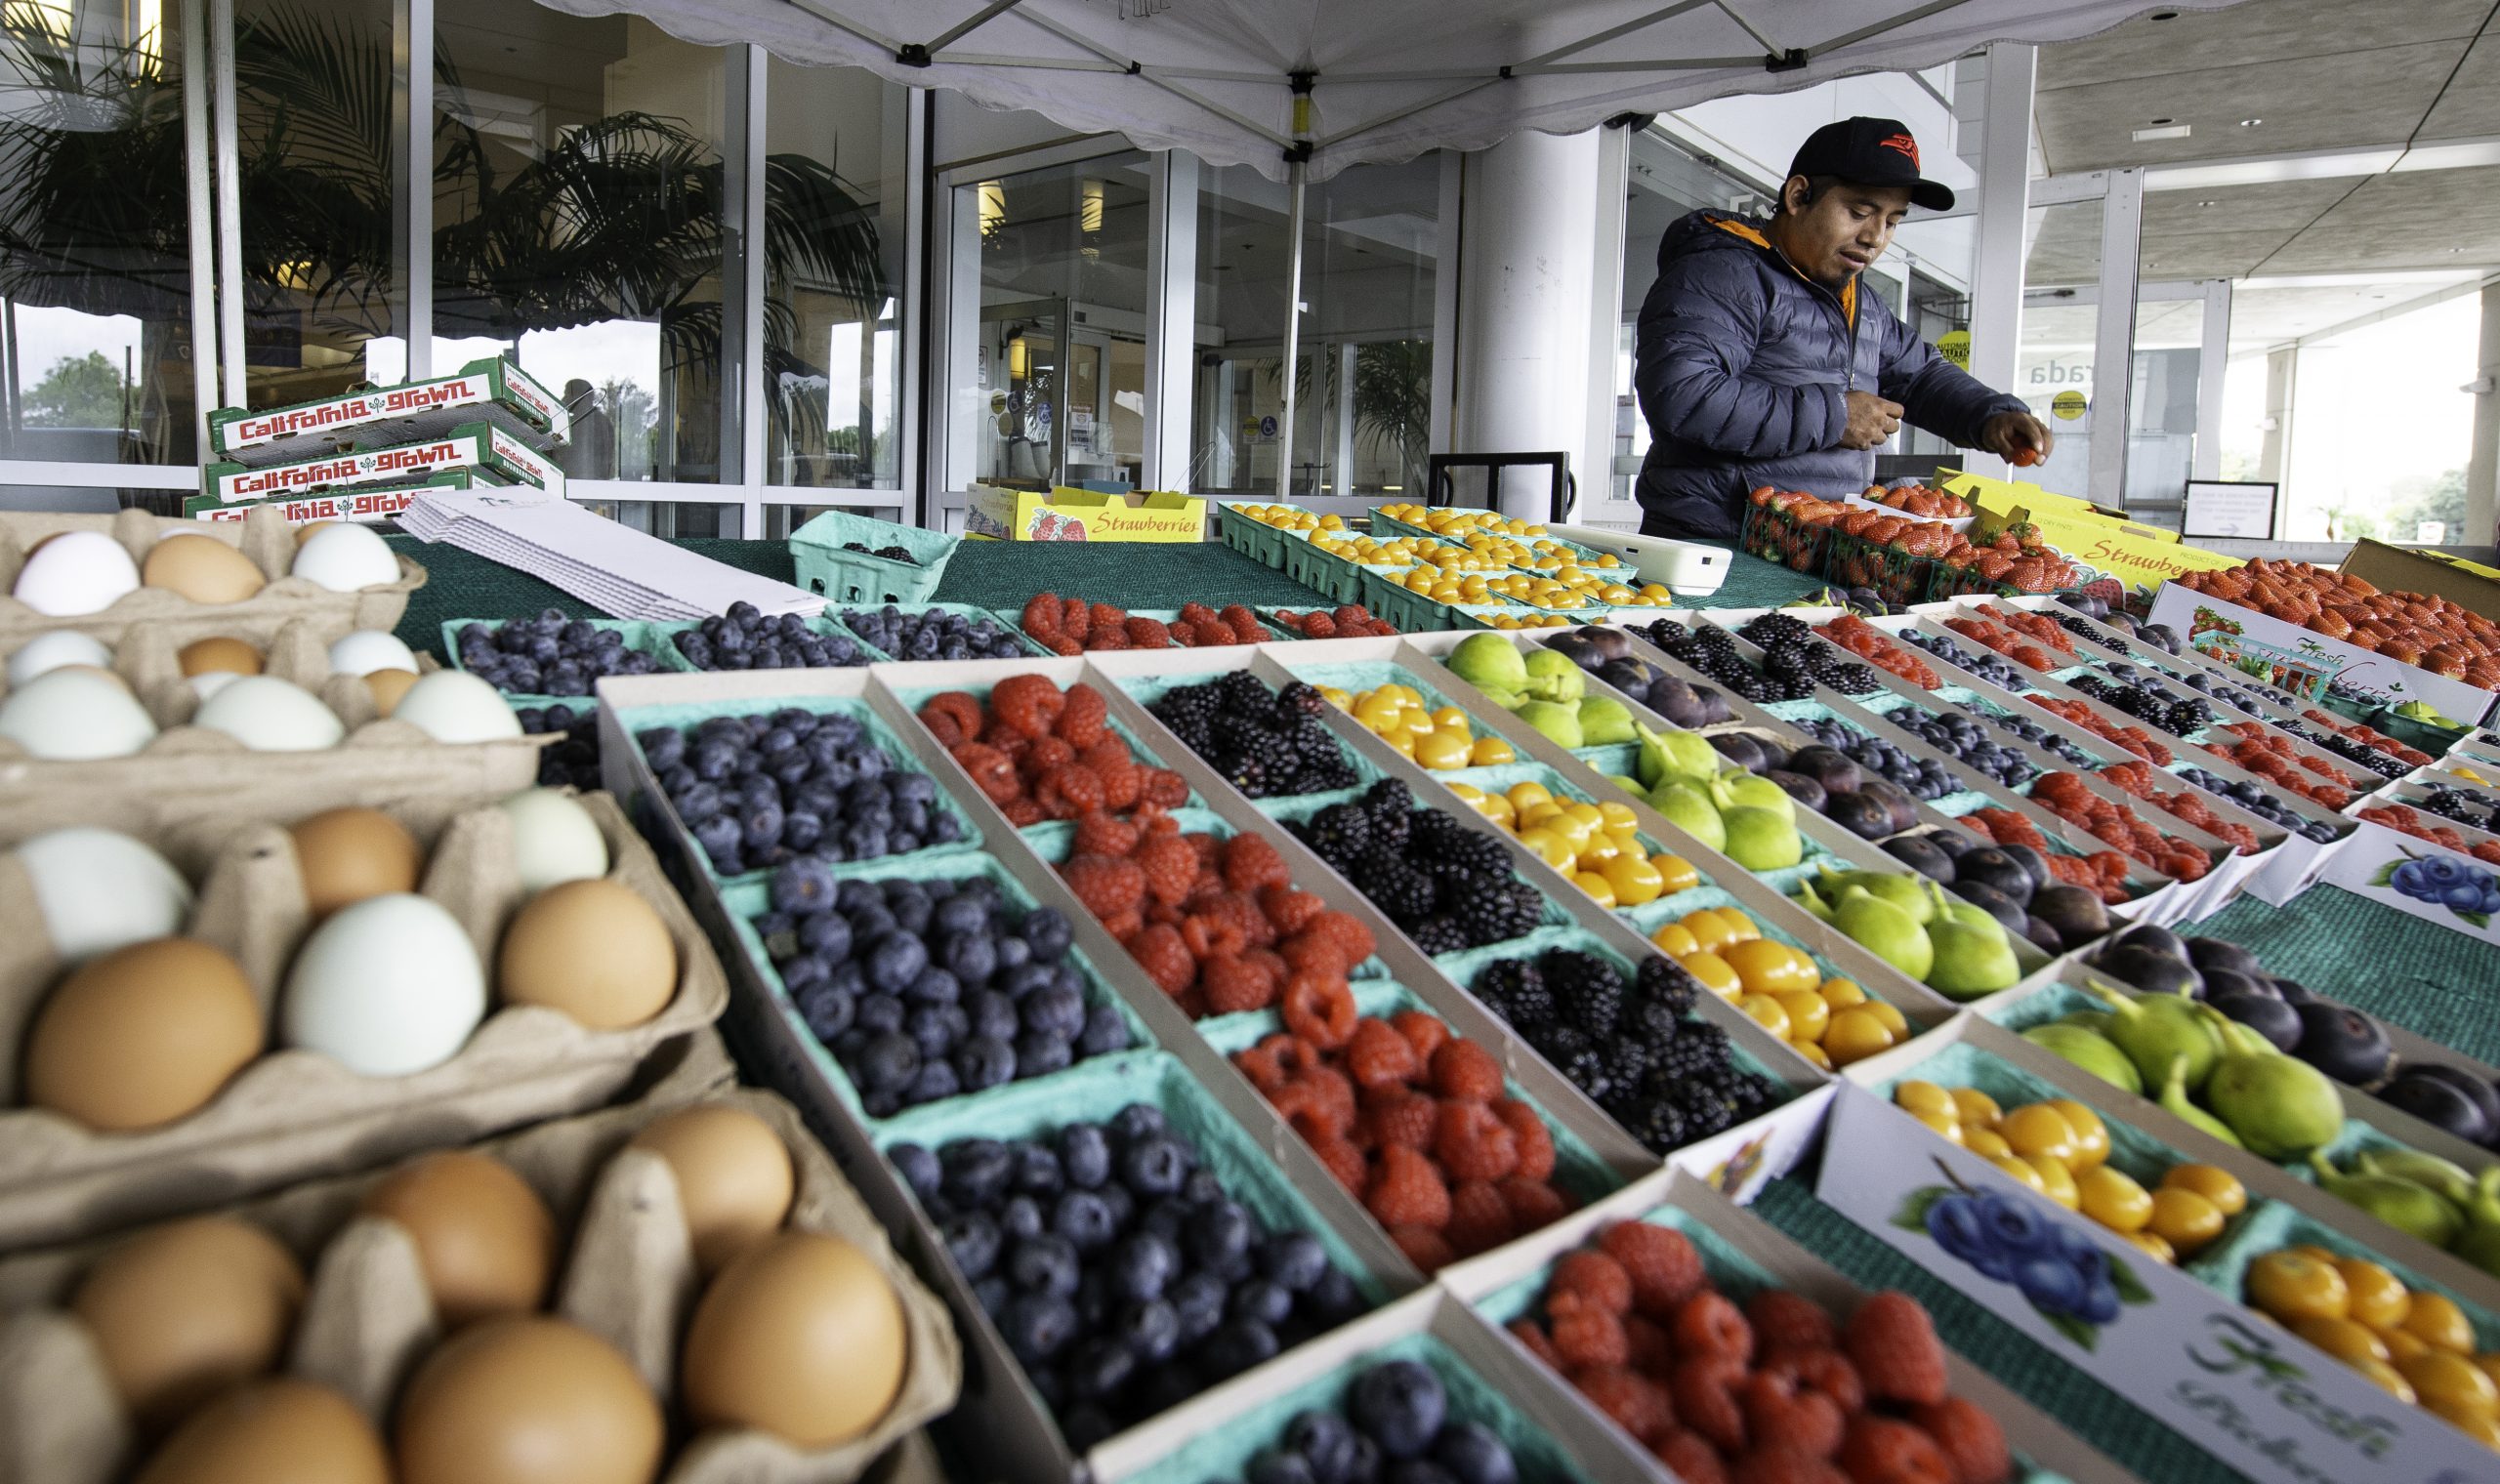 Low-cost farmers market produce